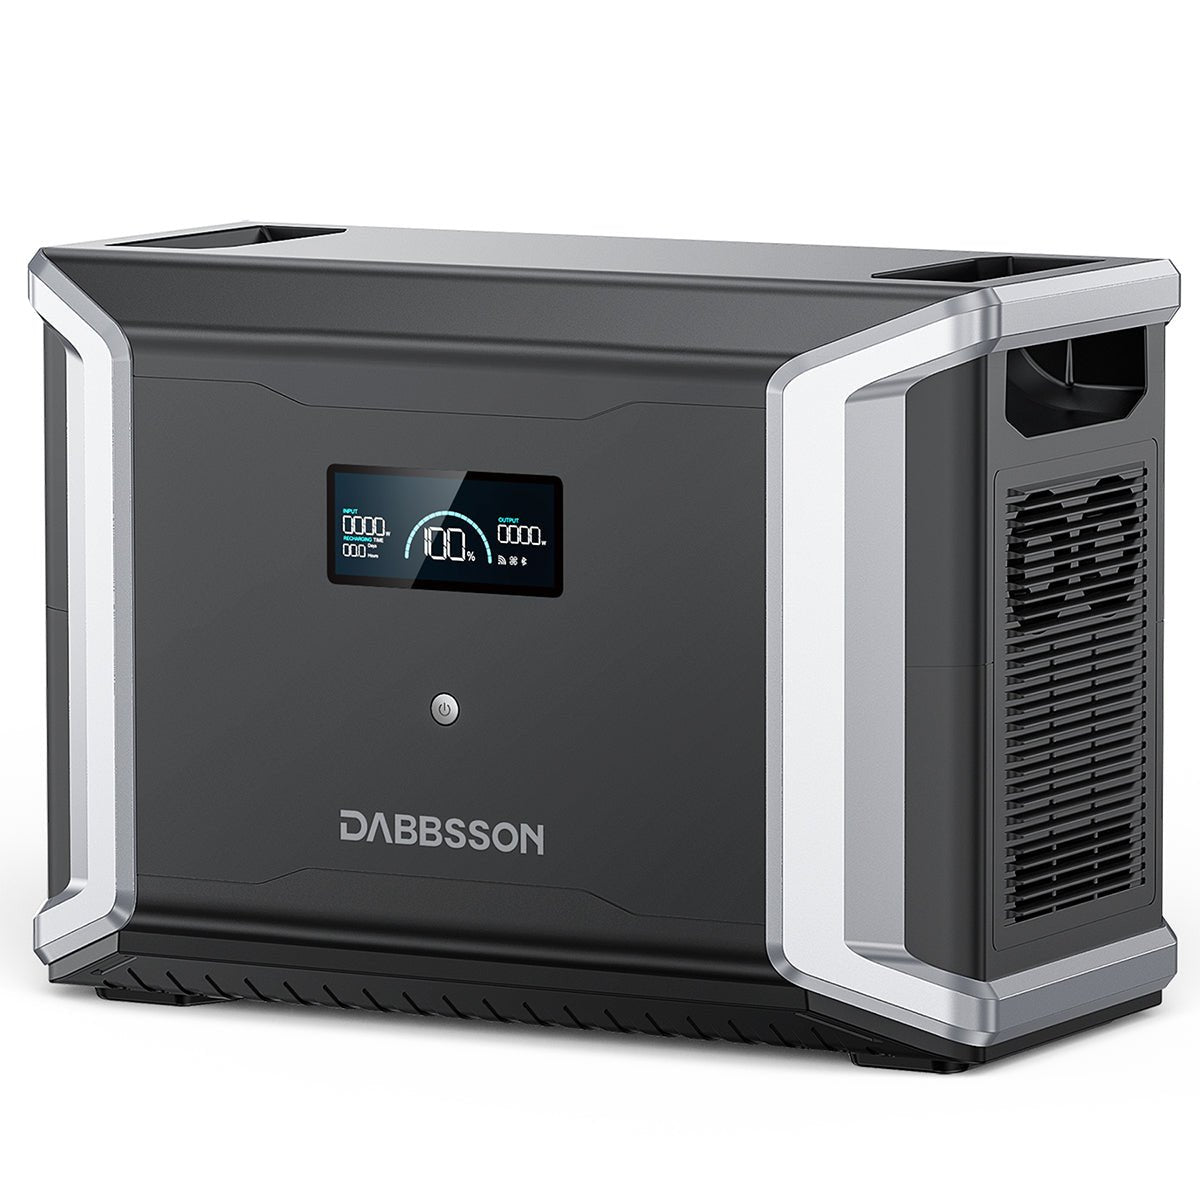 【認定整備済製品】Dabbsson DBS3000B 容量拡張バッテリー DBS2300 & DBS2300 Plus 専用のエクストラバッテリー 3000Wh